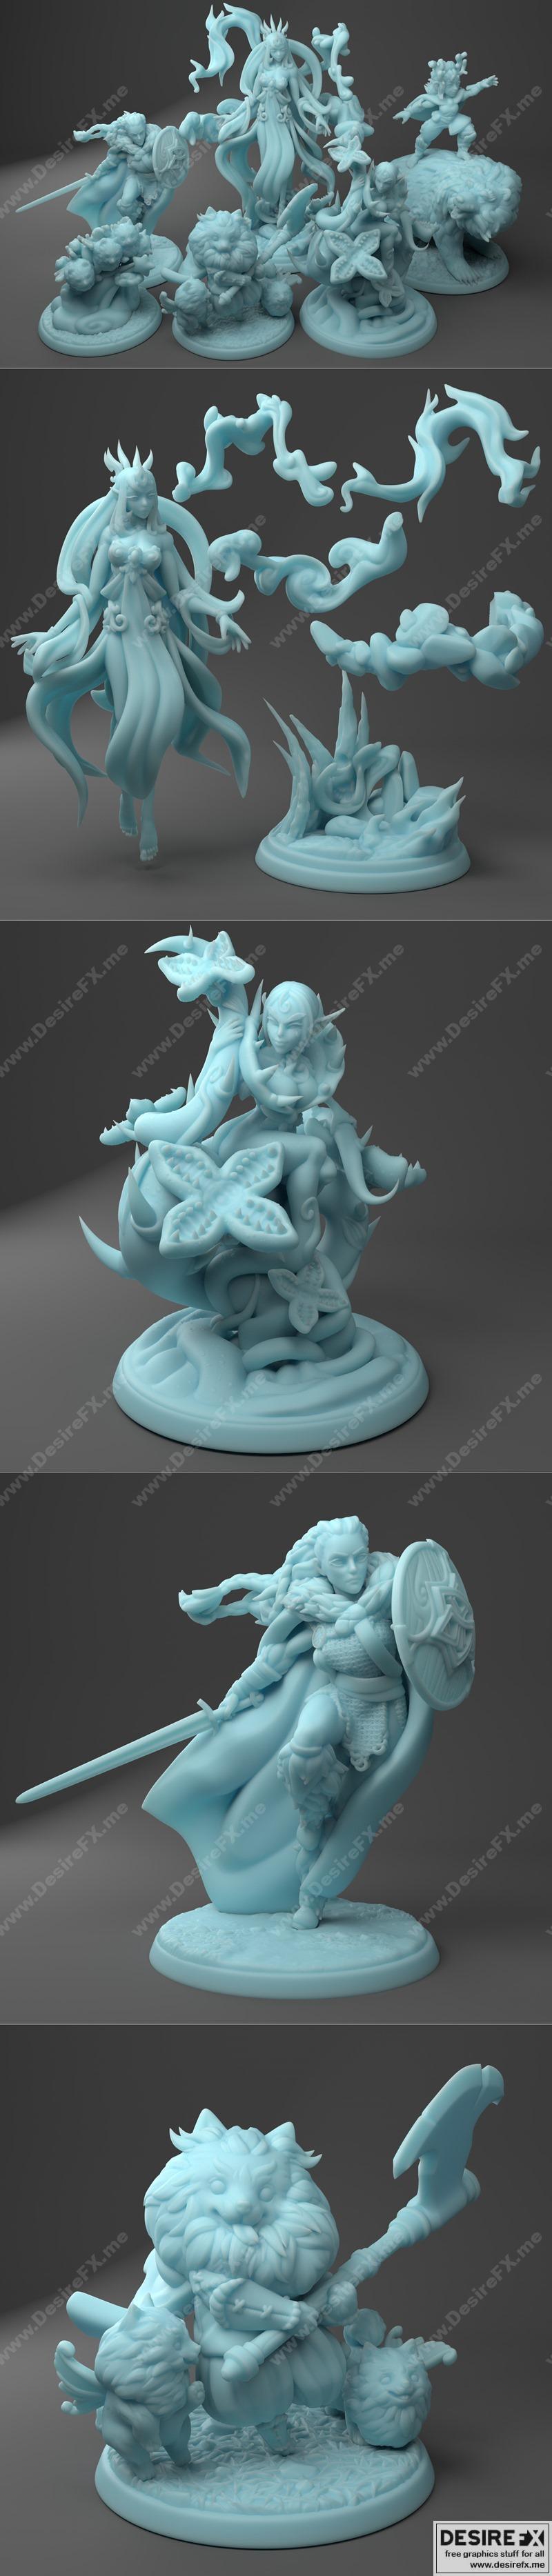 Desire FX 3d models | Twin Goddess Miniatures March 2021 – 3D Print ...